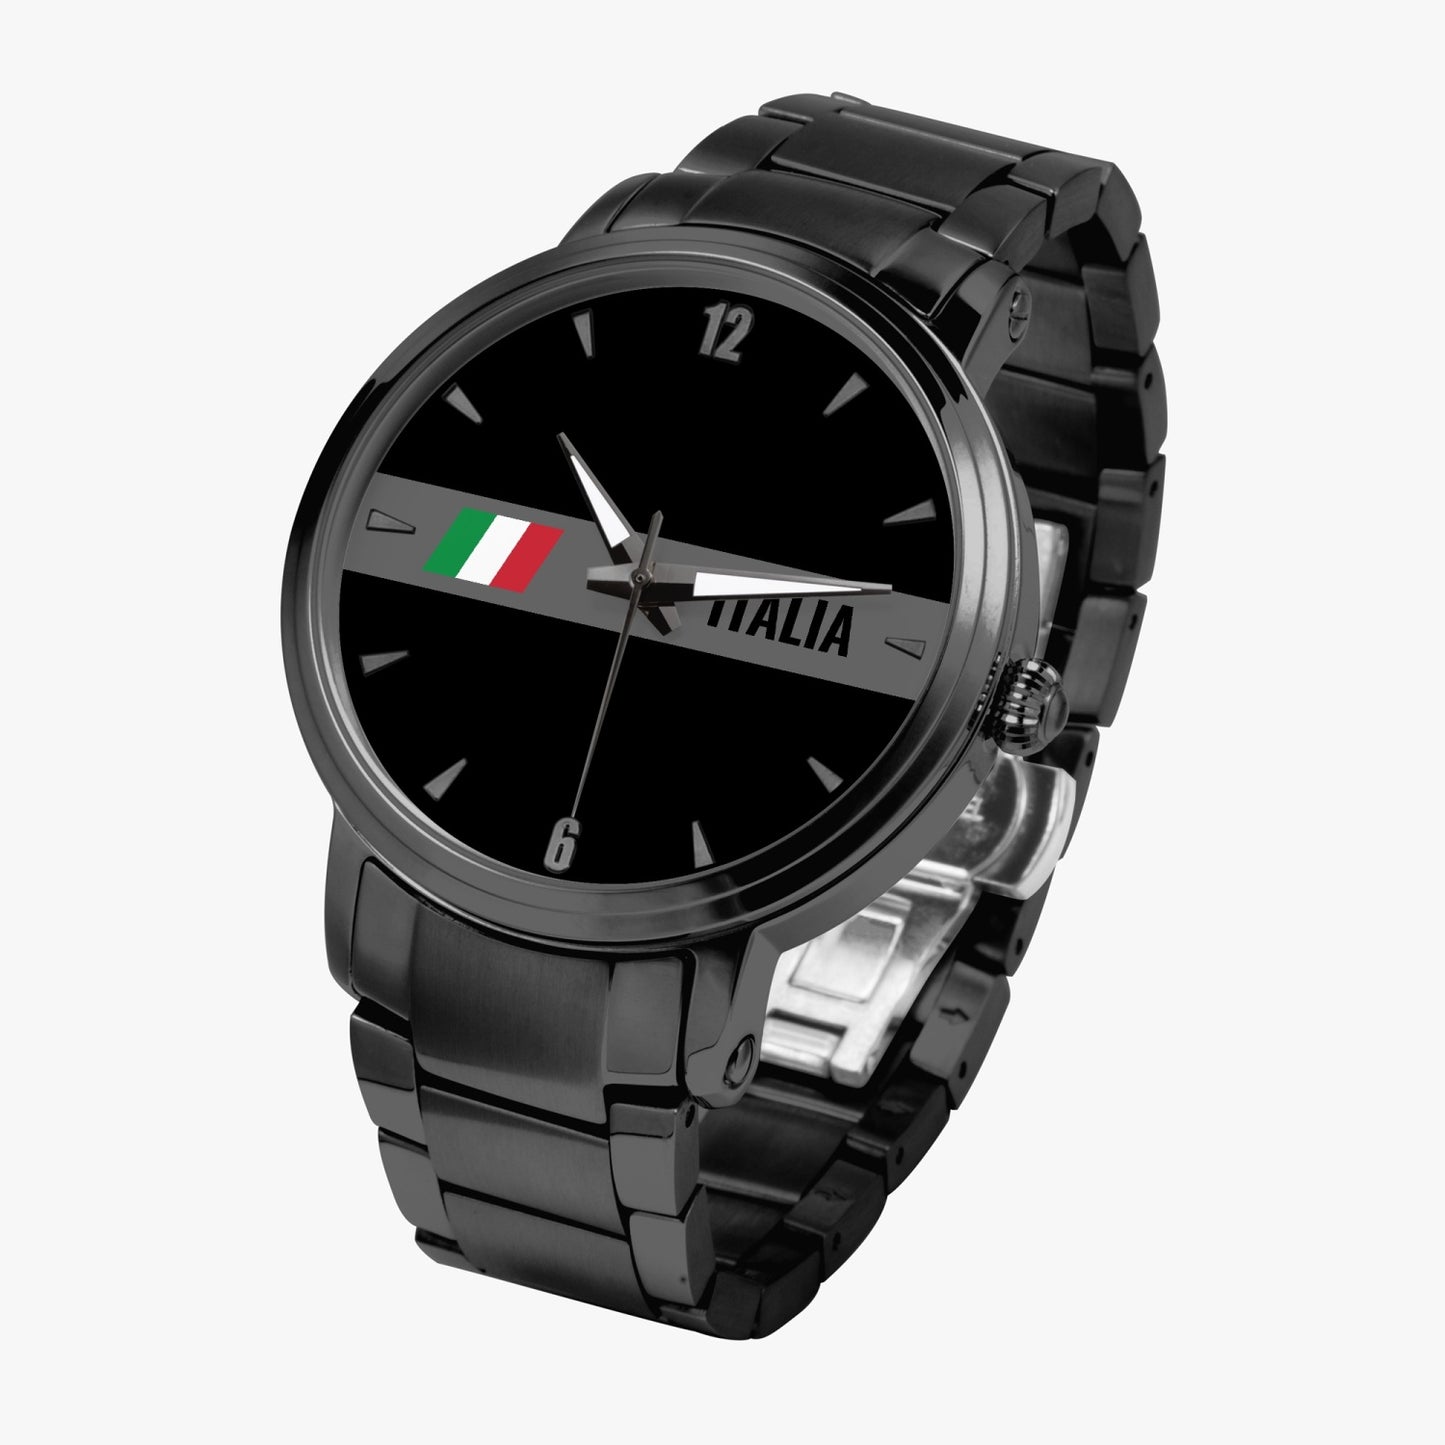 Orologio Movimento Automatico Italia Nero - Acciaio Inossidabile Premium